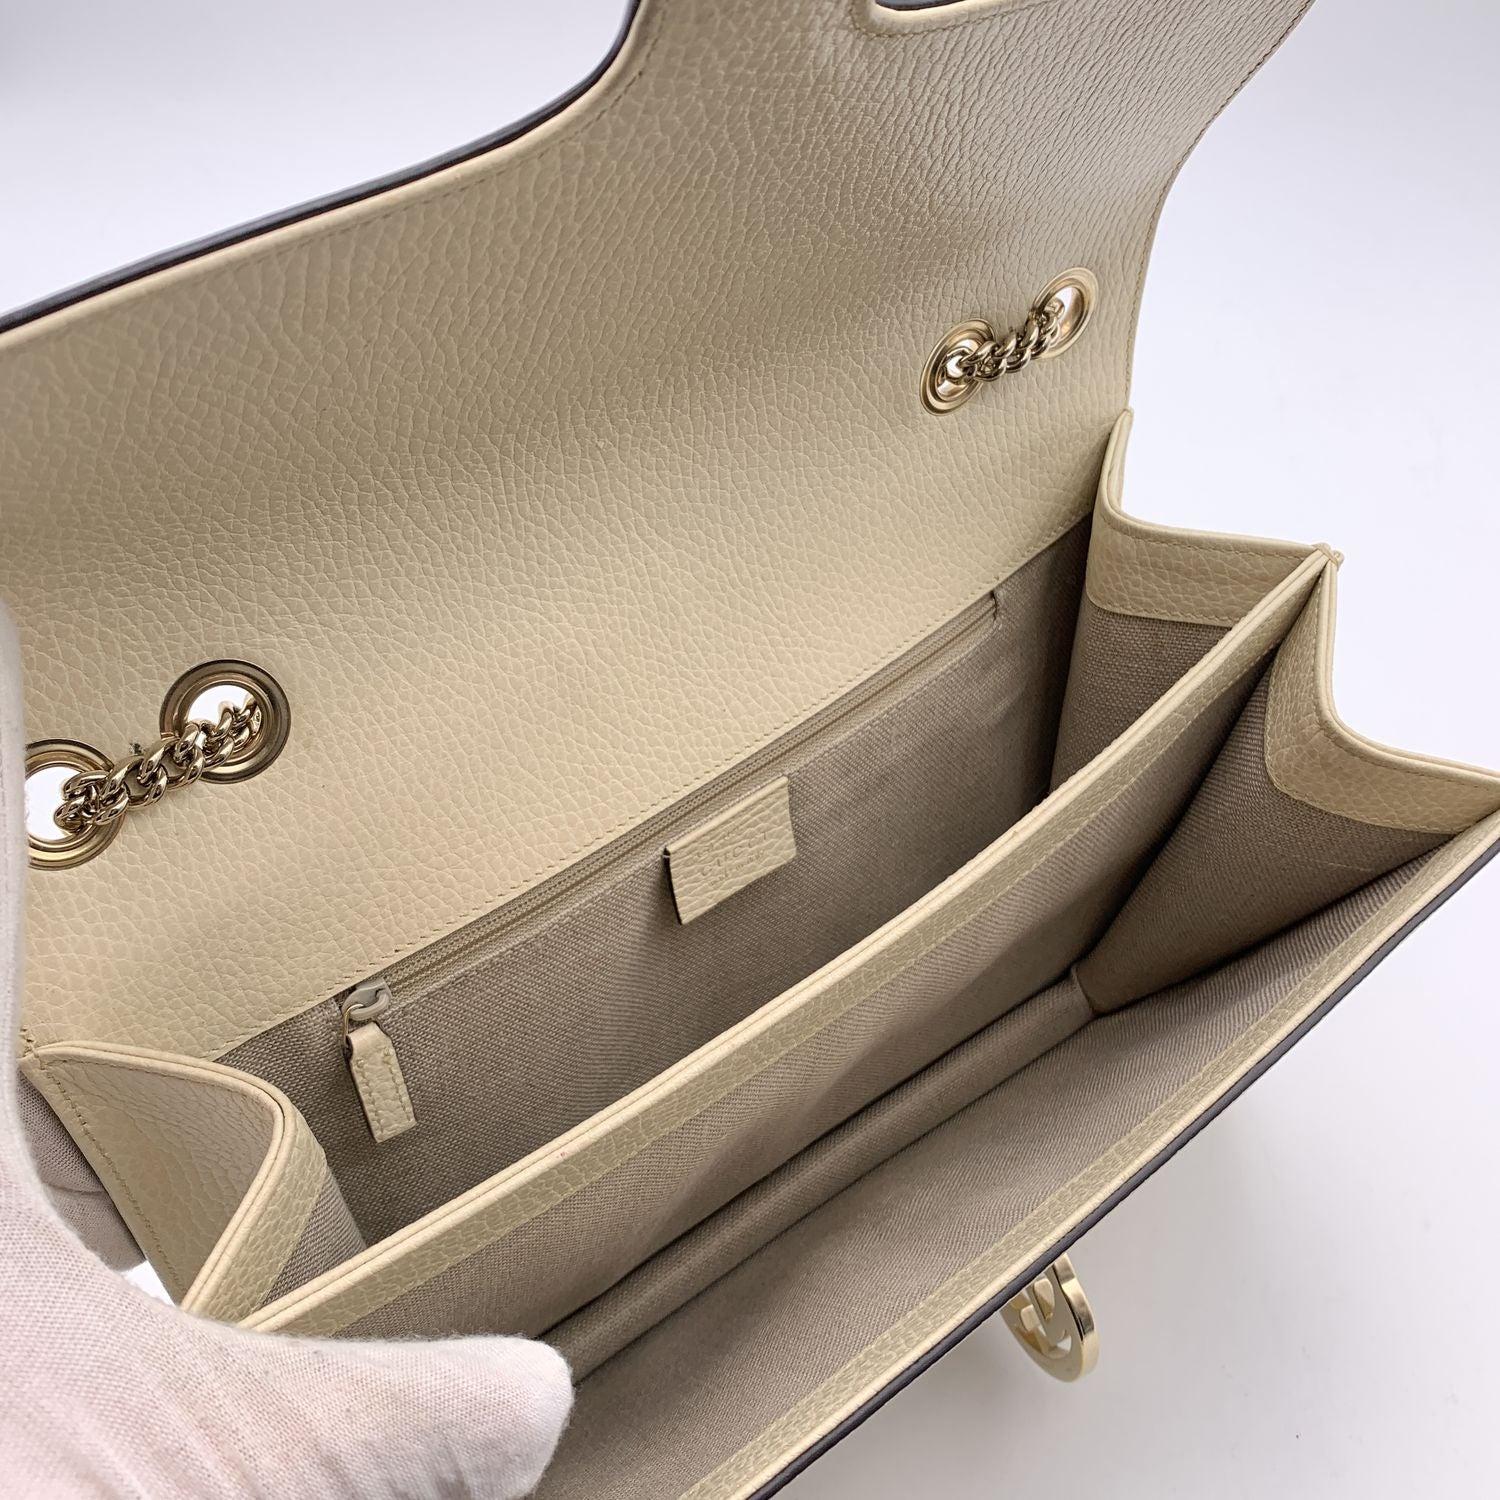 Gucci Beige Leather GG Interlocking Dollar Crossbody Bag 1